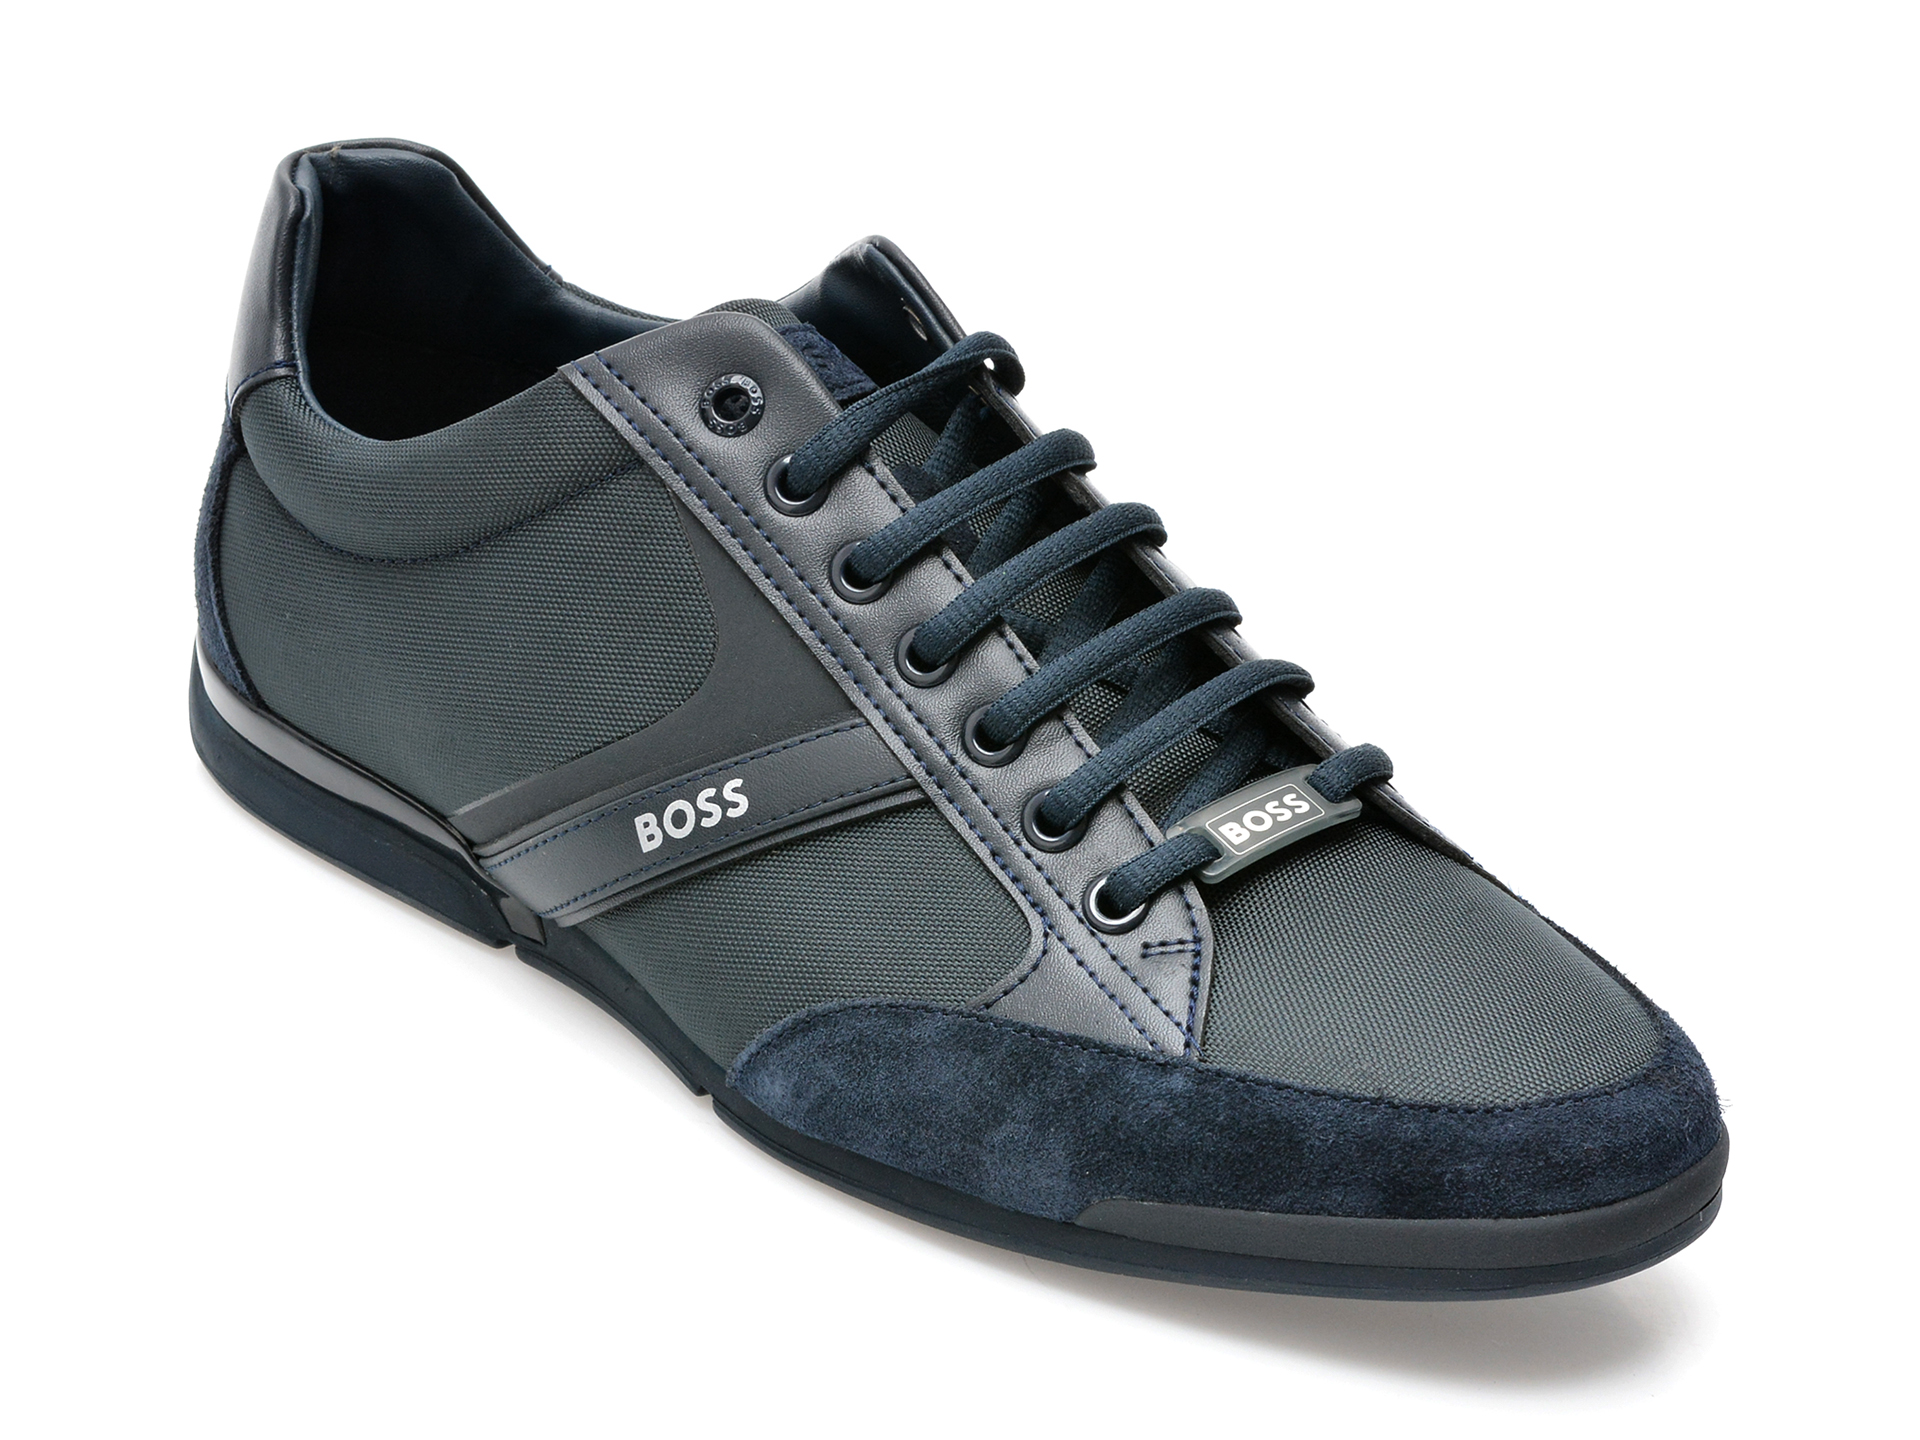 Pantofi sport HUGO BOSS bleumarin, 1235, din material textil si piele naturala /barbati/pantofi /barbati/pantofi